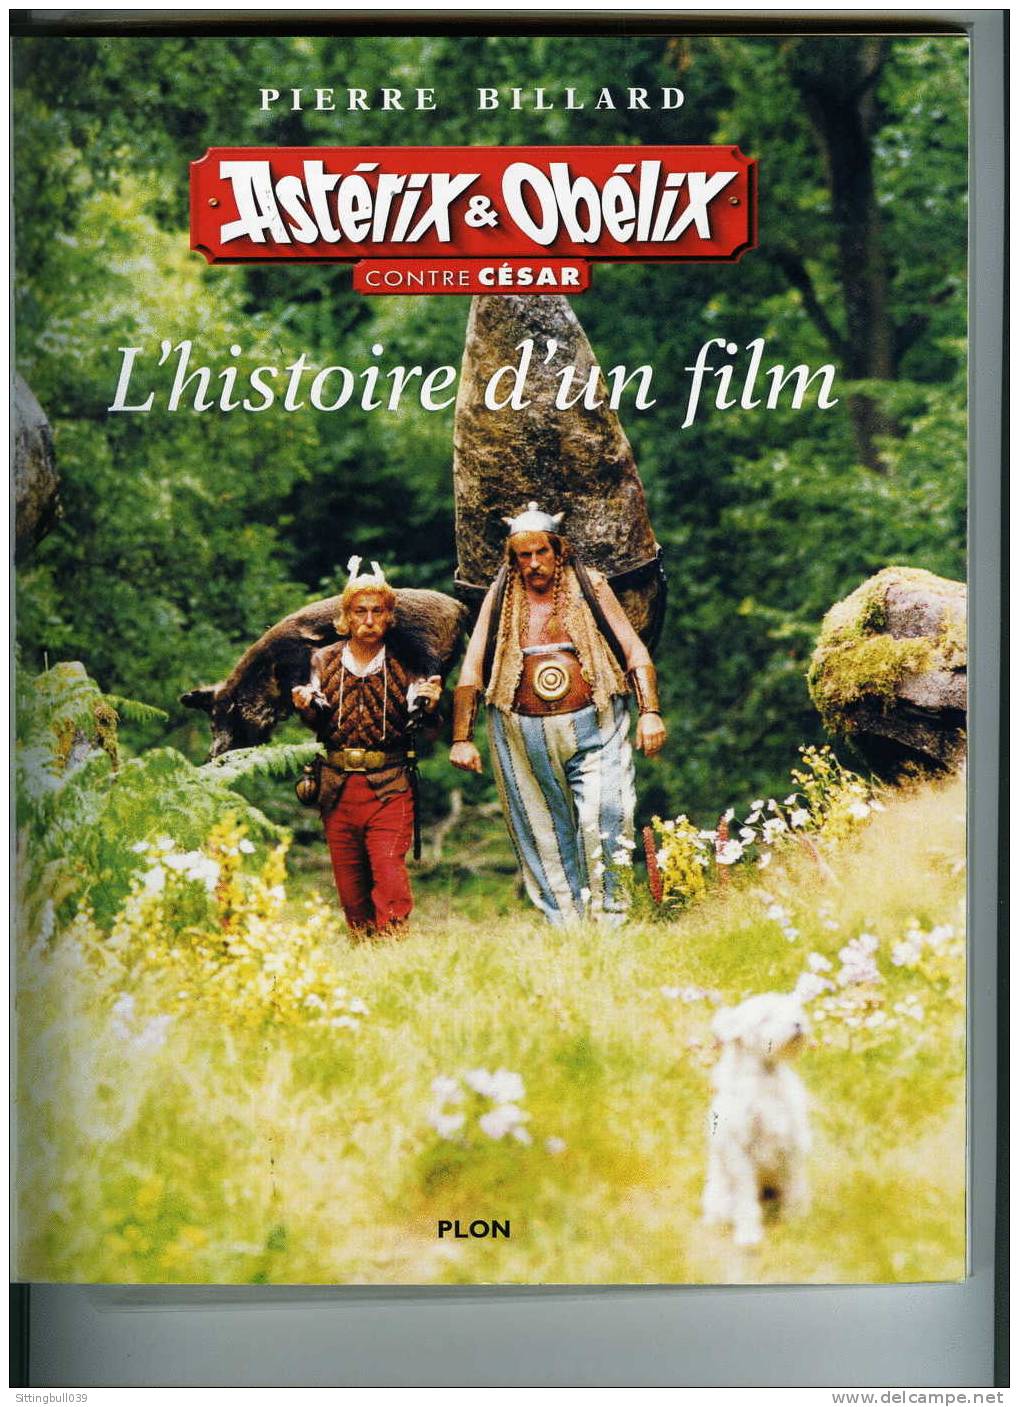 ASTERIX & OBELIX CONTRE CESAR, L'HISTOIRE D'UN FILM PAR PIERRE BILLARD. ED PLON 1999. POUR LES INCONDITIONNELS D'ASTERIX - Astérix